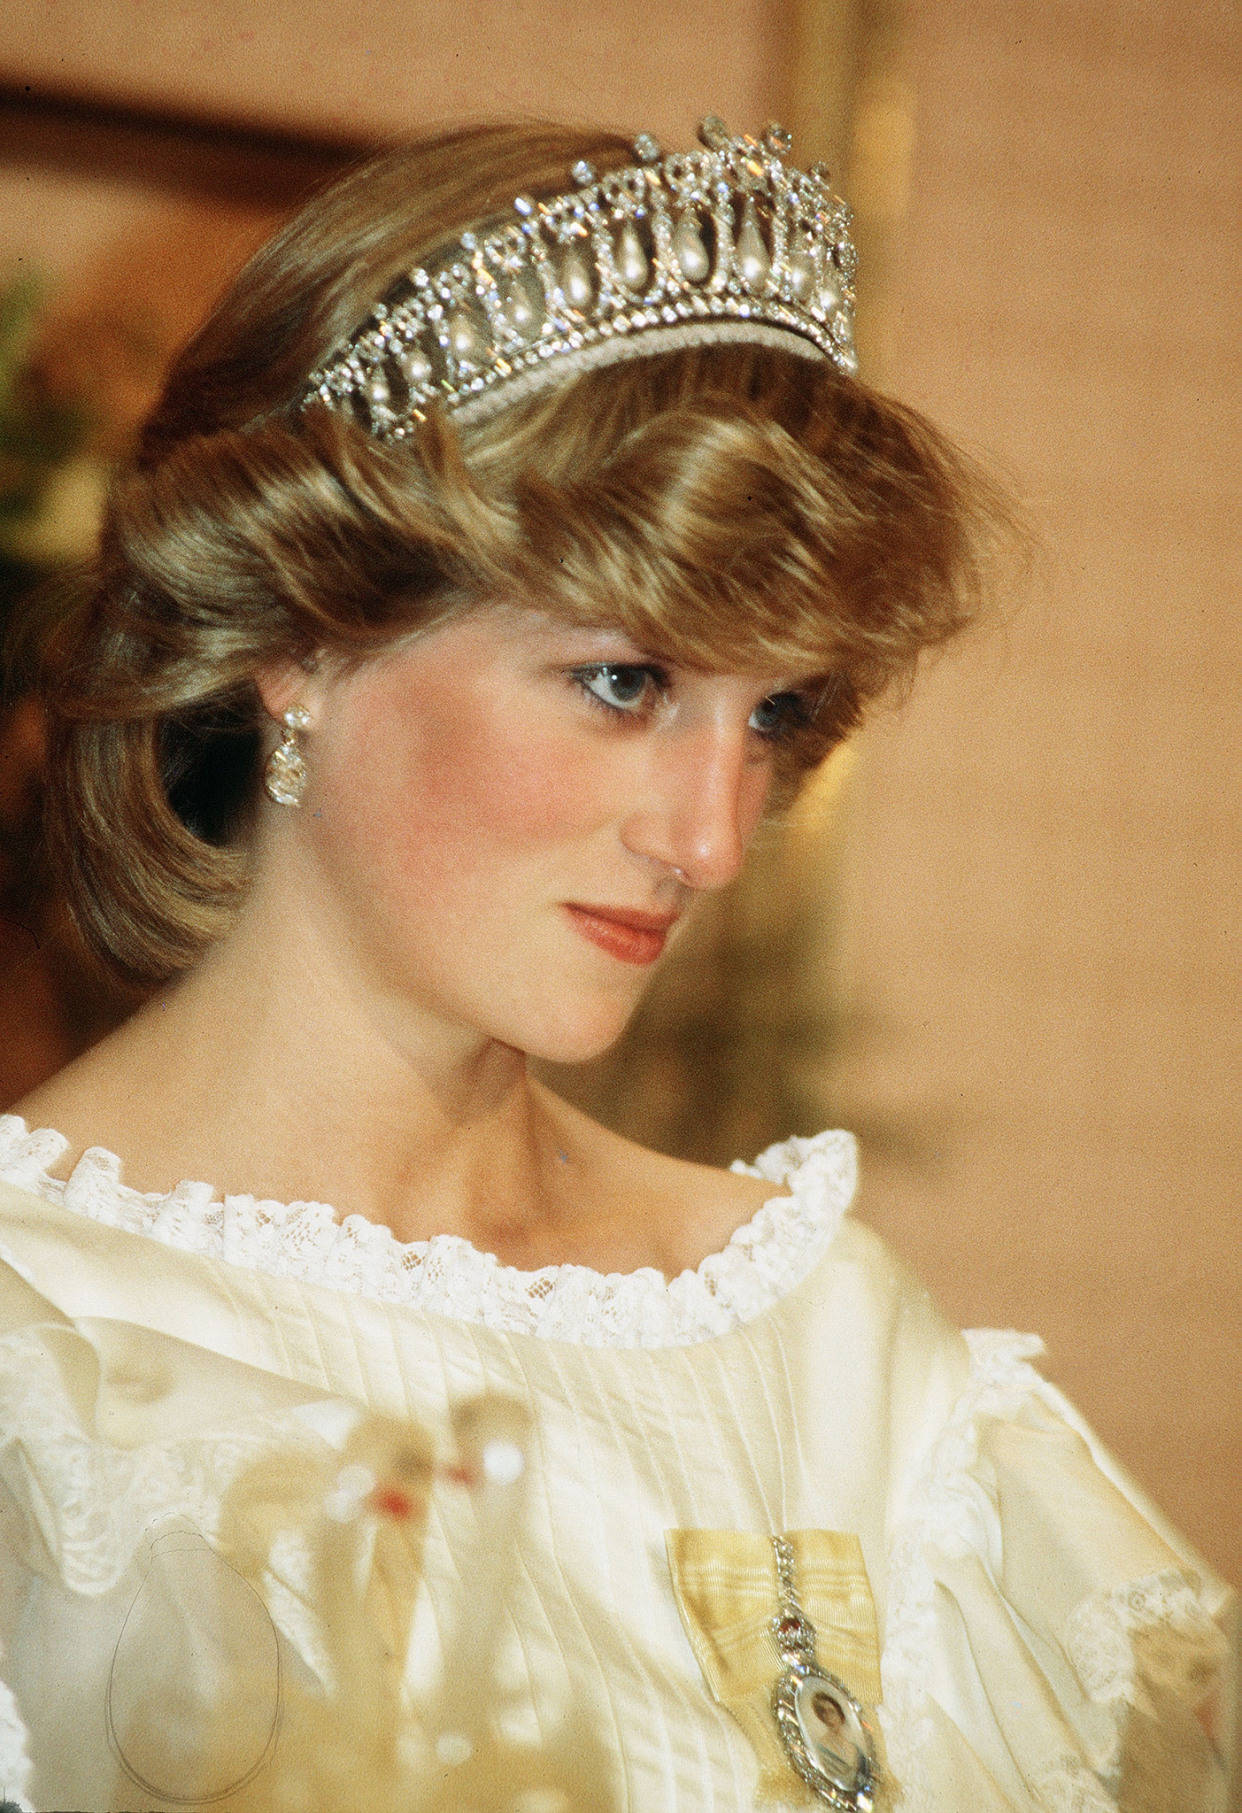 戴安娜大婚时的花卉王冠,搭配过多次礼服,优雅唯美,闪耀至极